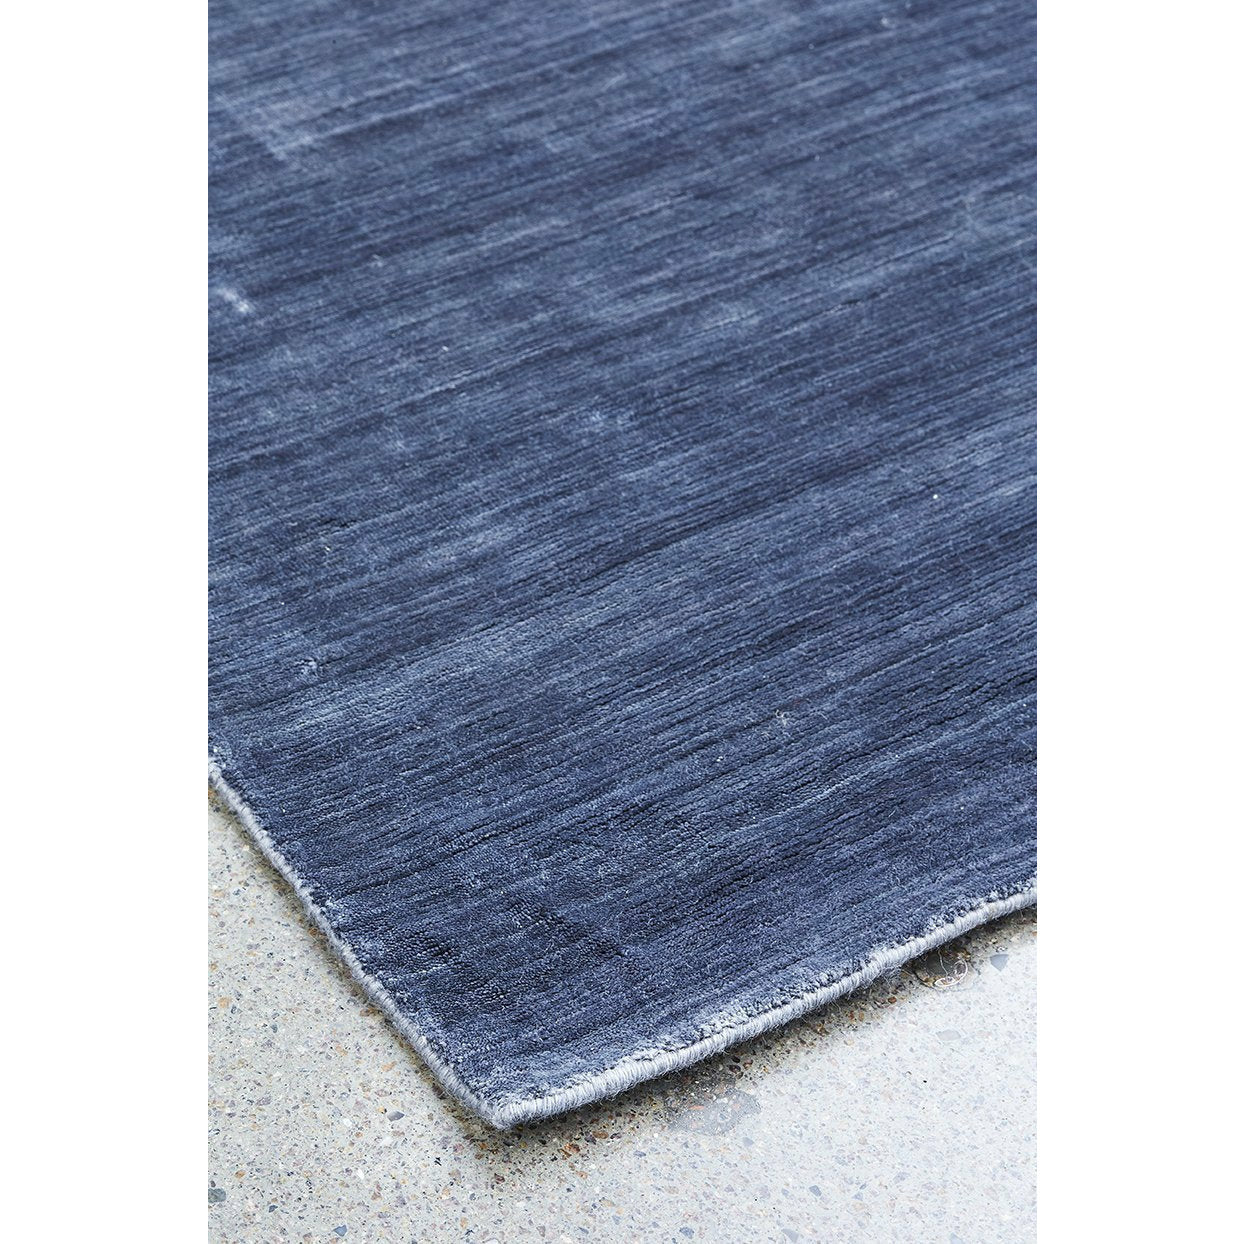 Massimo Bamboe tapijt staal zwart, 170x240 cm